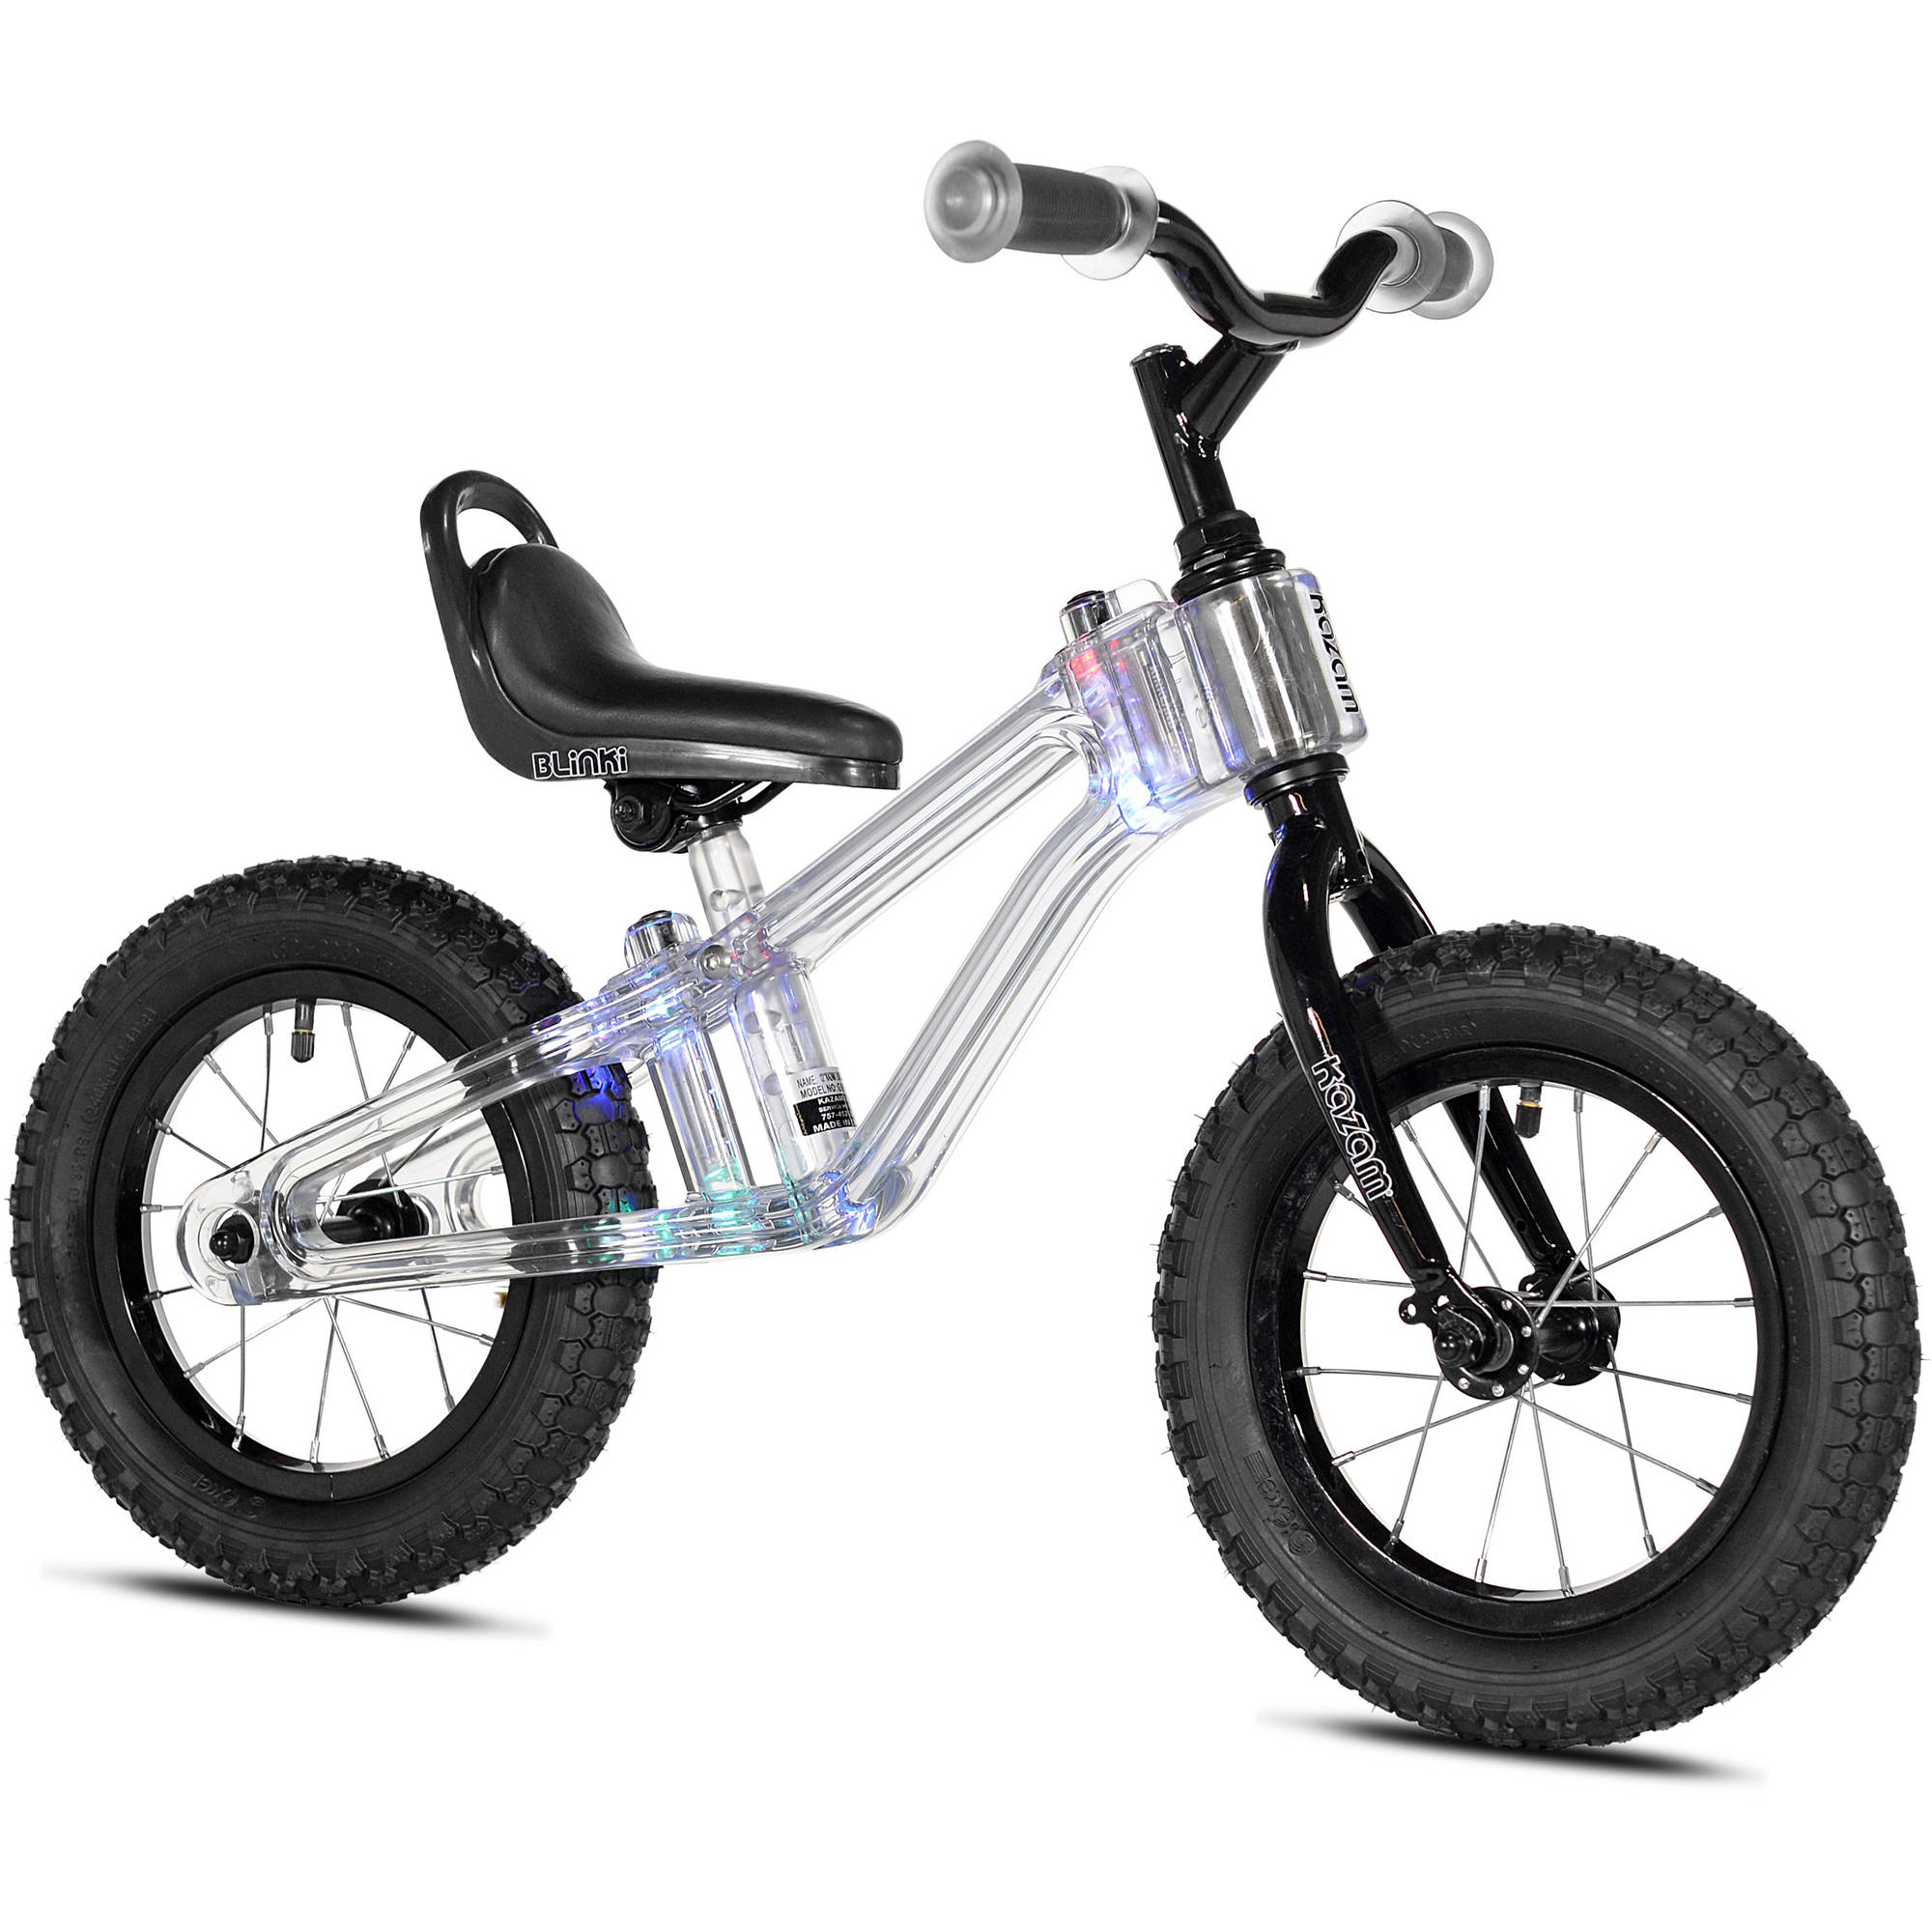 KaZAM 12" Blinki Balance Child's Bike with Multi-Colored LED Lights, Black - image 4 of 7